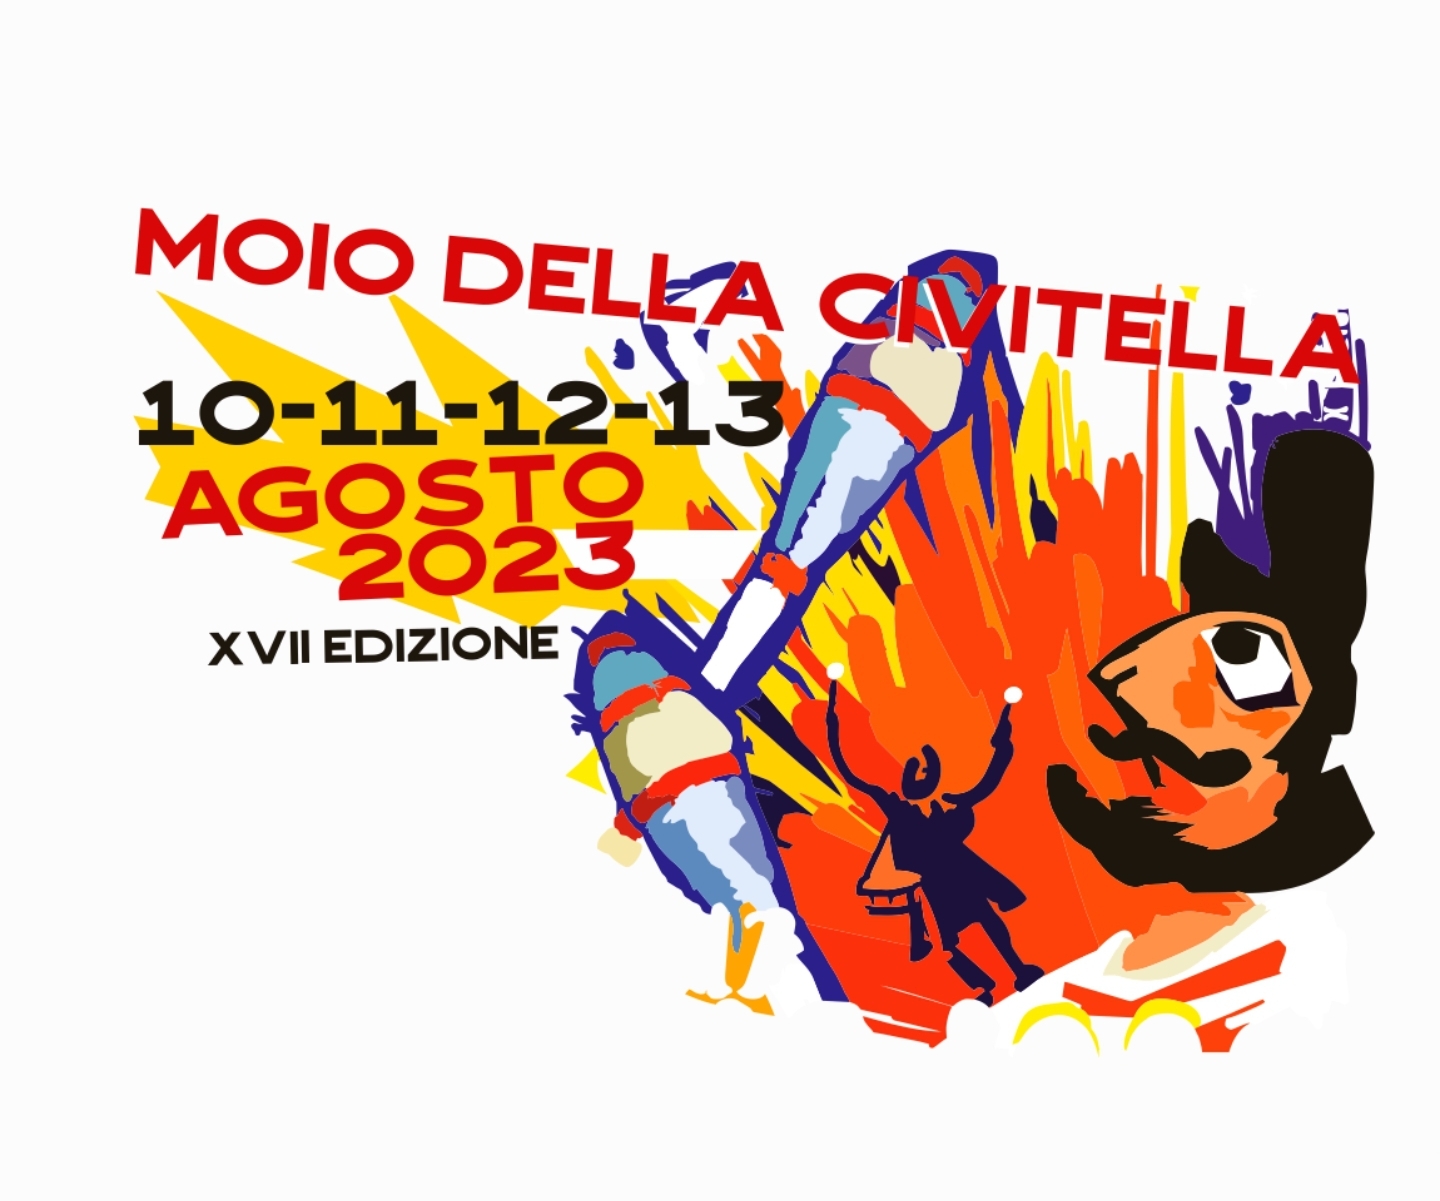 Mojoca-2023-Festival-Artisti-di-strada-Moio-Civitella-Cilento-2